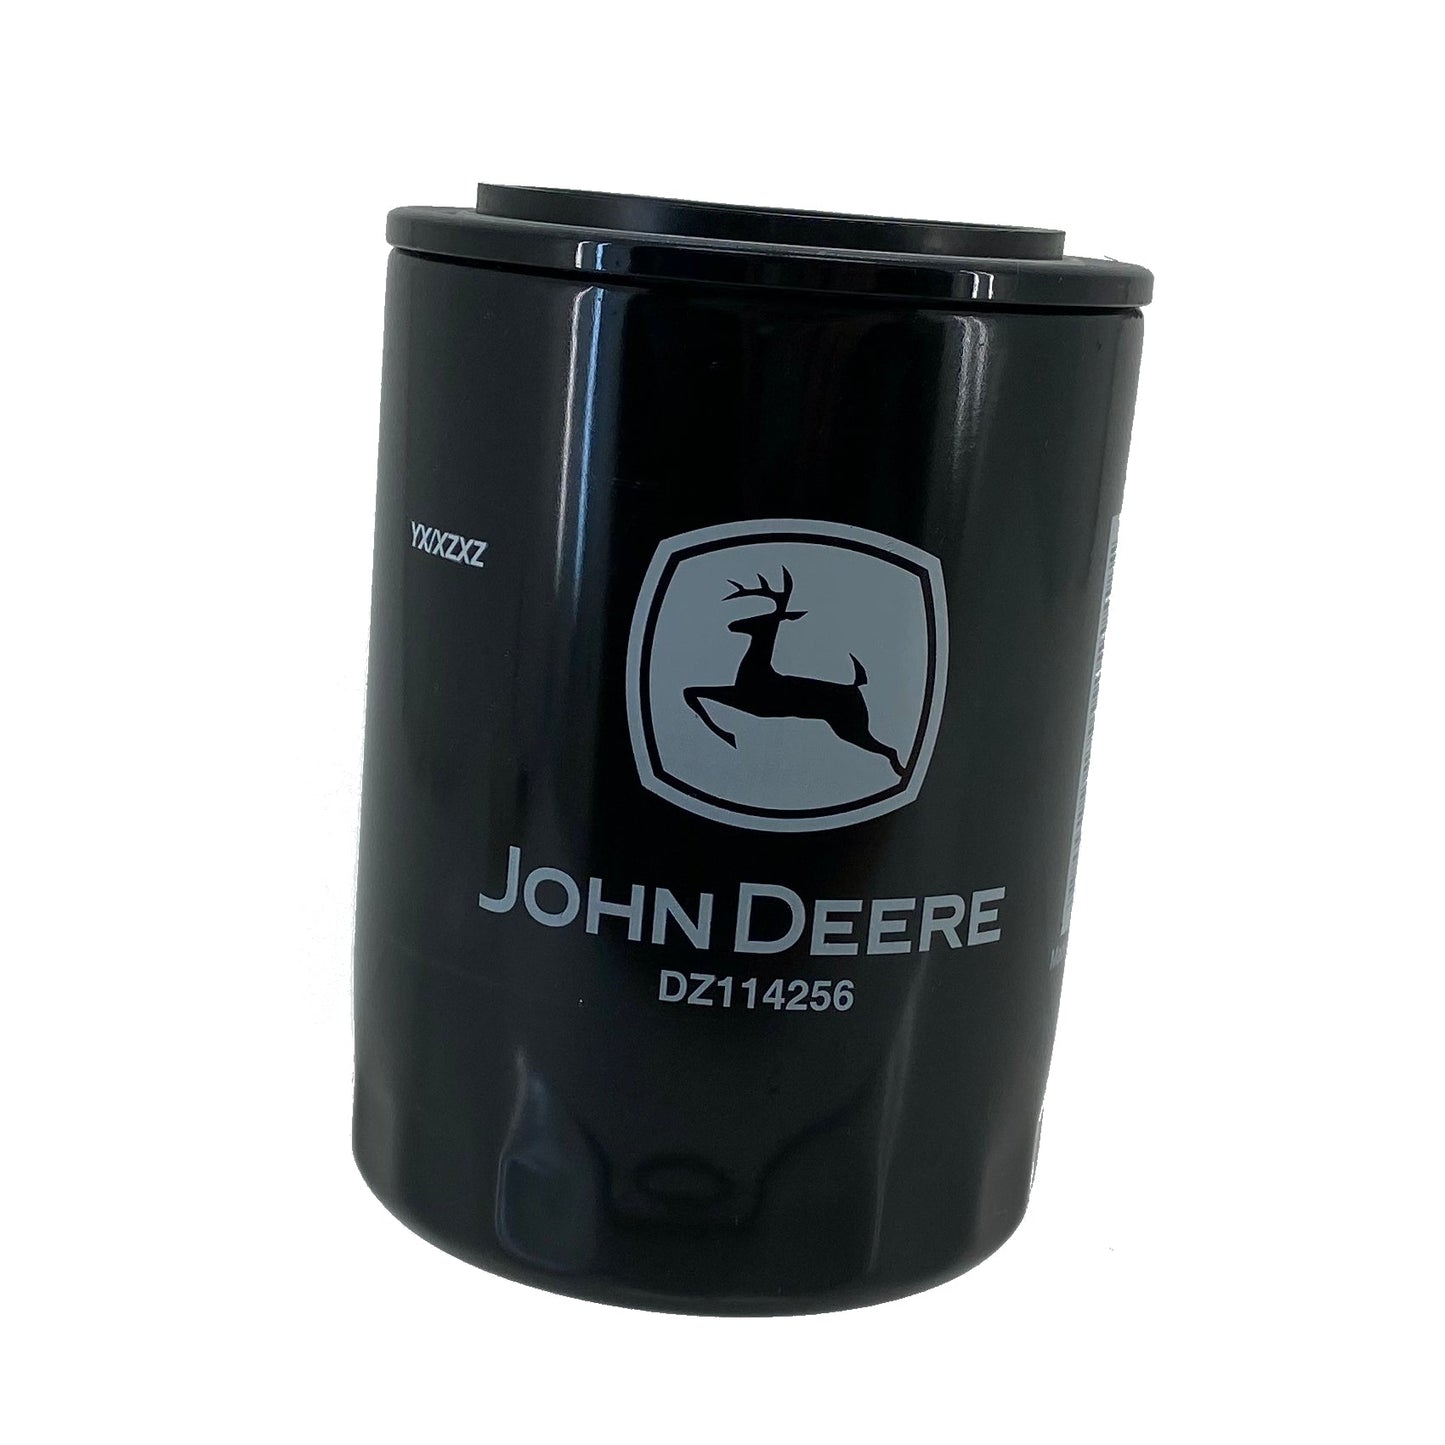 John Deere Original Equipment Oil Filter - DZ114256 – AGNLAWN.com